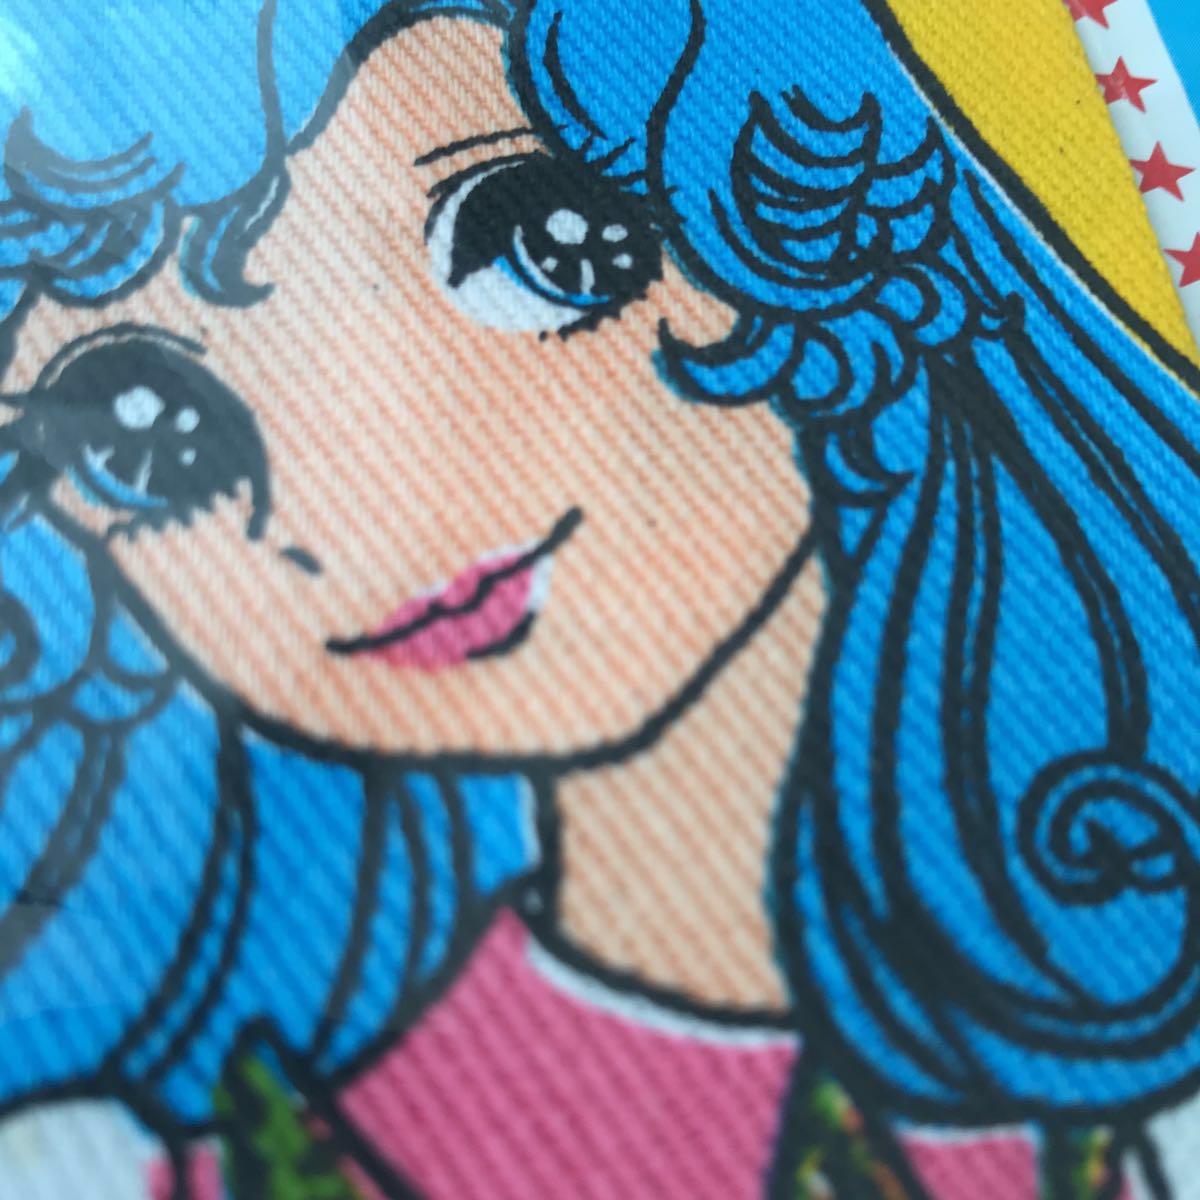 少女漫画 2枚セット ひざあて 昭和レトロ アップリケ デットストック 70's アニメ 女の子 ハンドメイド リメイク コレクター ノスタルジー